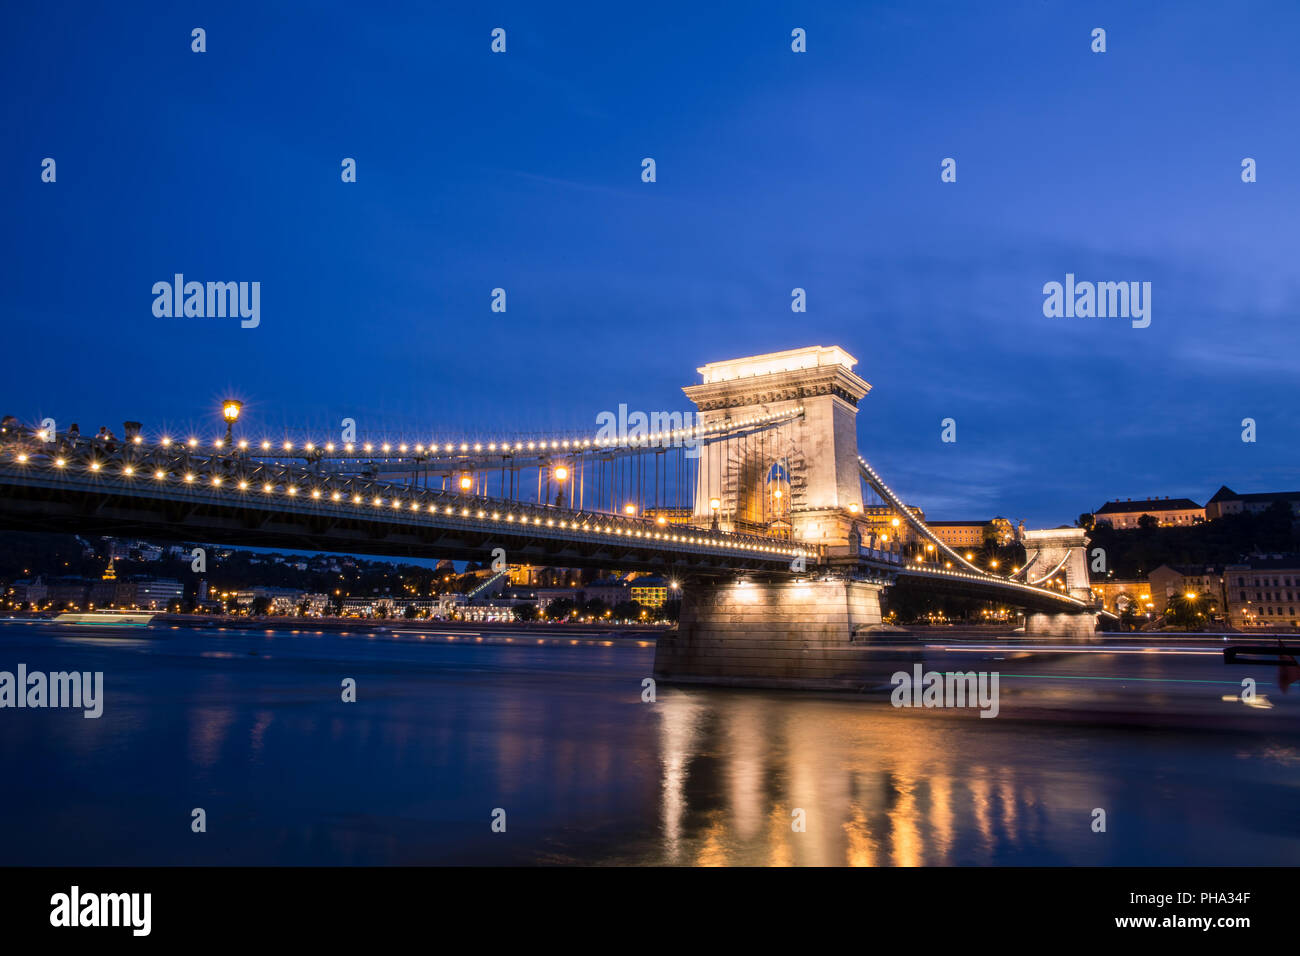 Szechenyi Lanchid - Szechenyi Suspencion Bridge in Budapest, Hungary Stock Photo